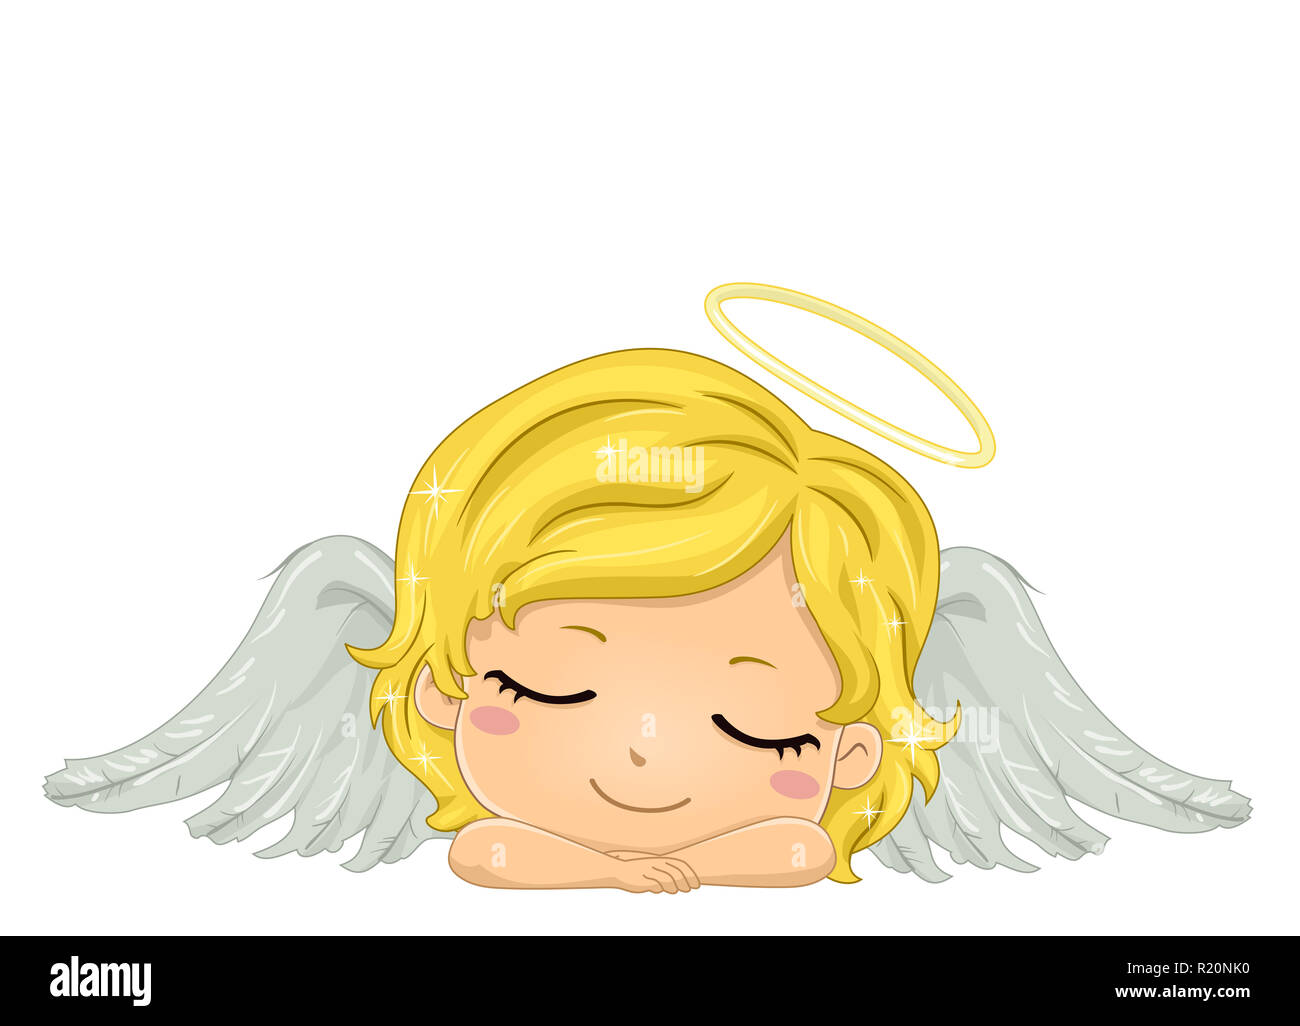 Illustration colorée dispose d''une mignonne petite fille ailé avec un halo Dormir sur sa tête Banque D'Images